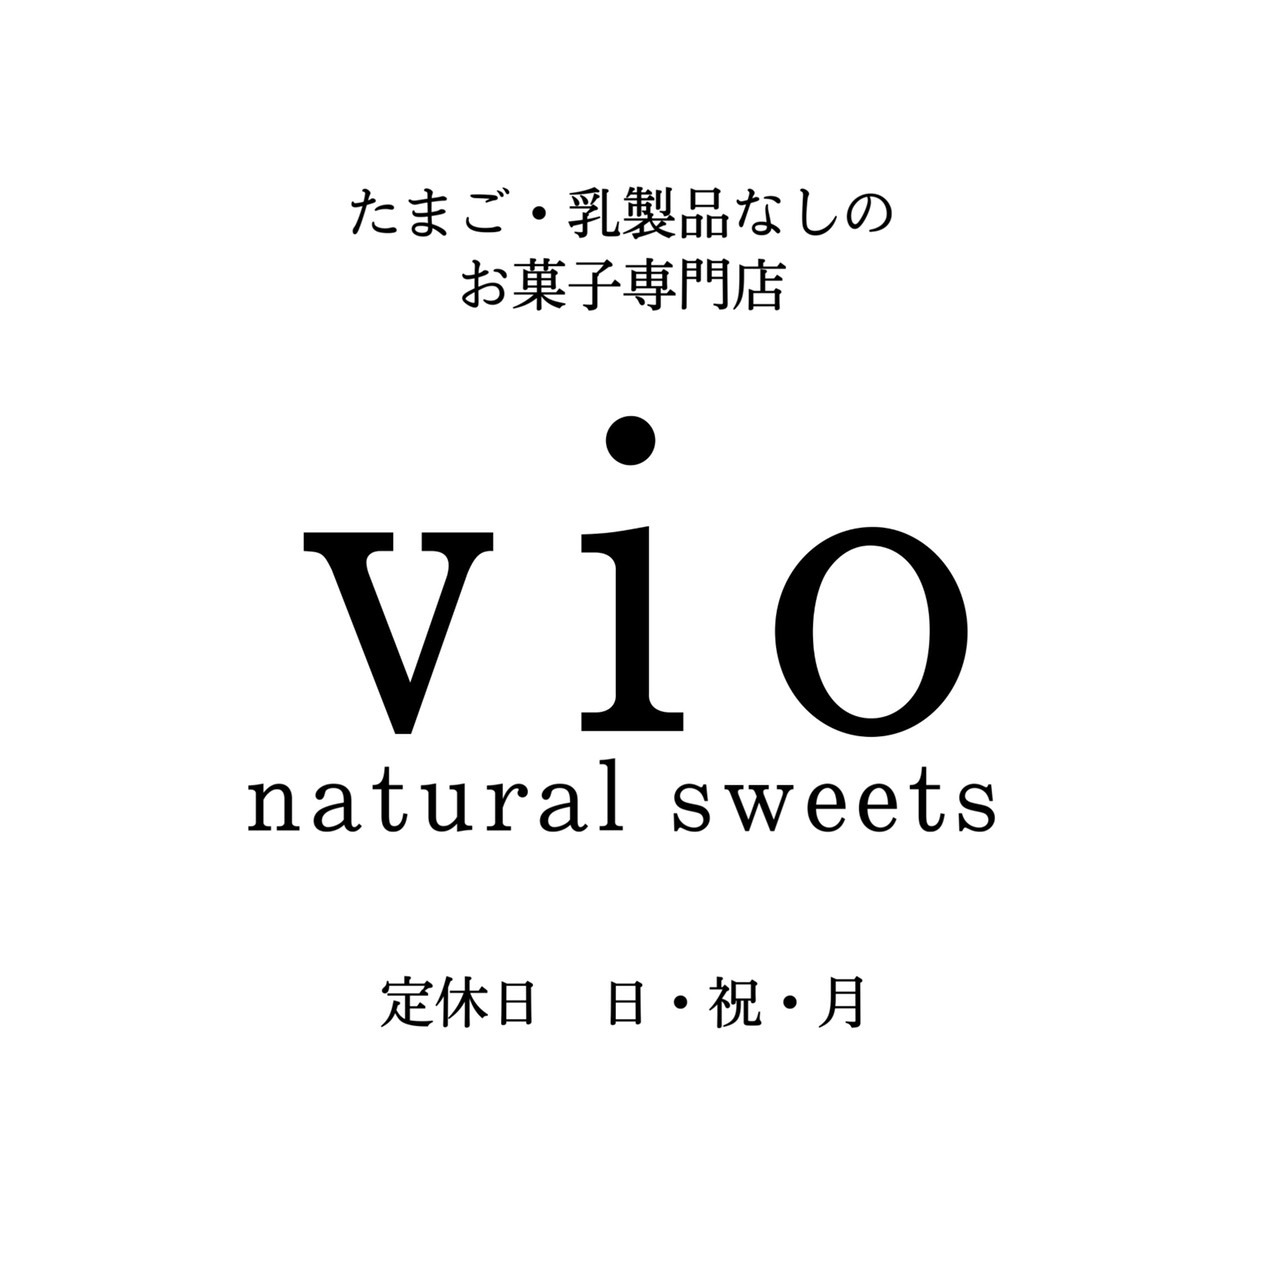 vio natural sweets